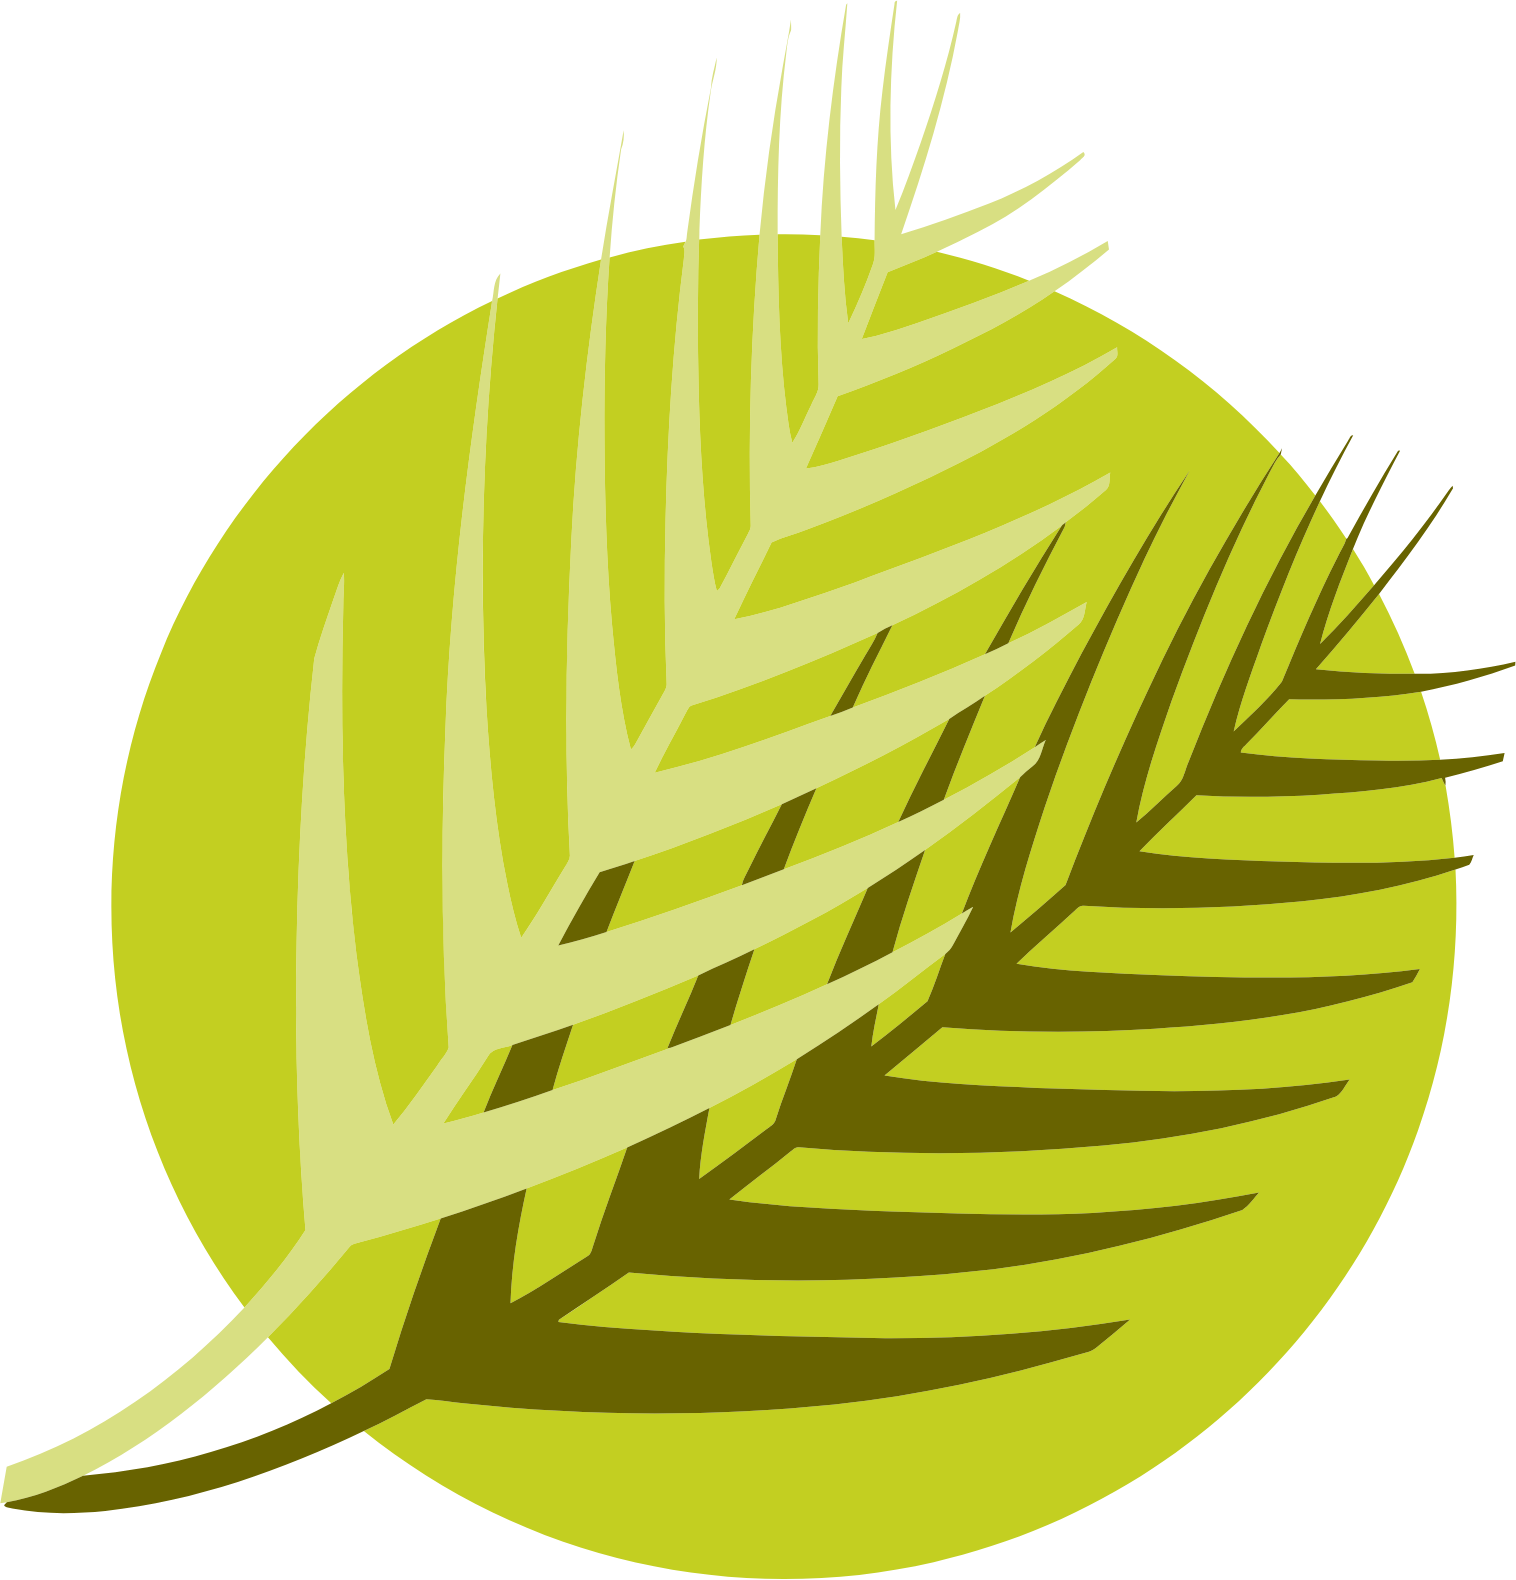 Al Meera Consumer Goods Company Logo (transparentes PNG)